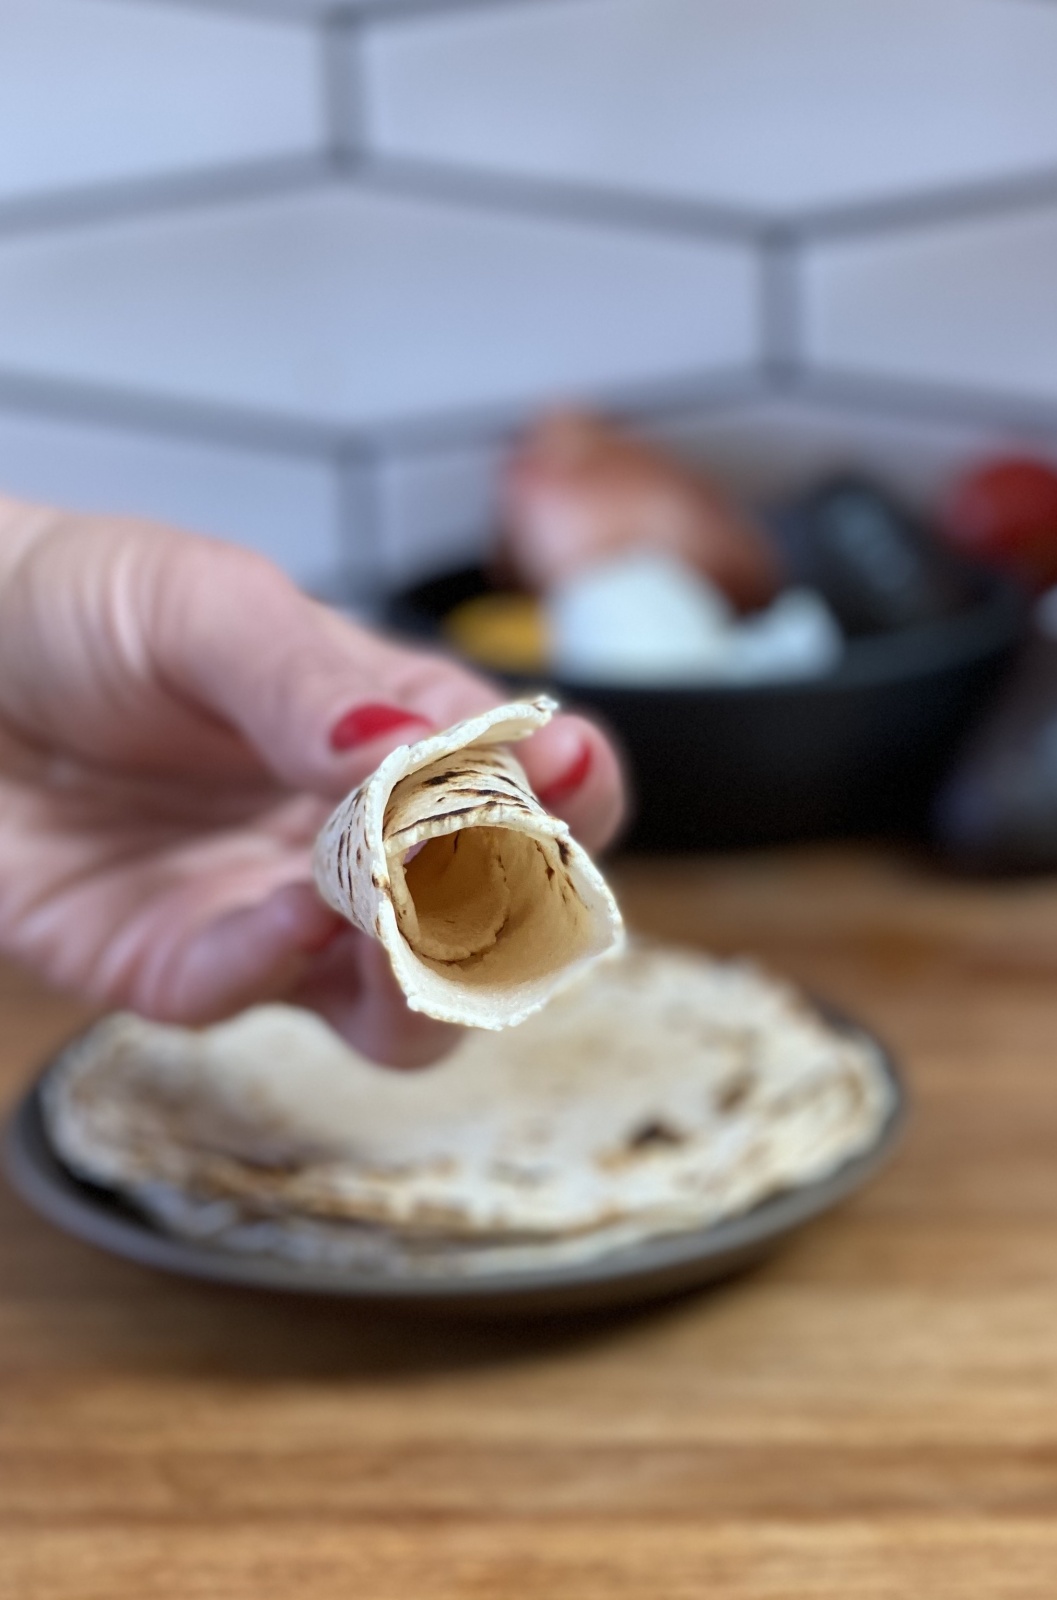 https://www.zenbelly.com/wp-content/uploads/2021/04/gluten-free-flour-tortillas-2-scaled.jpeg